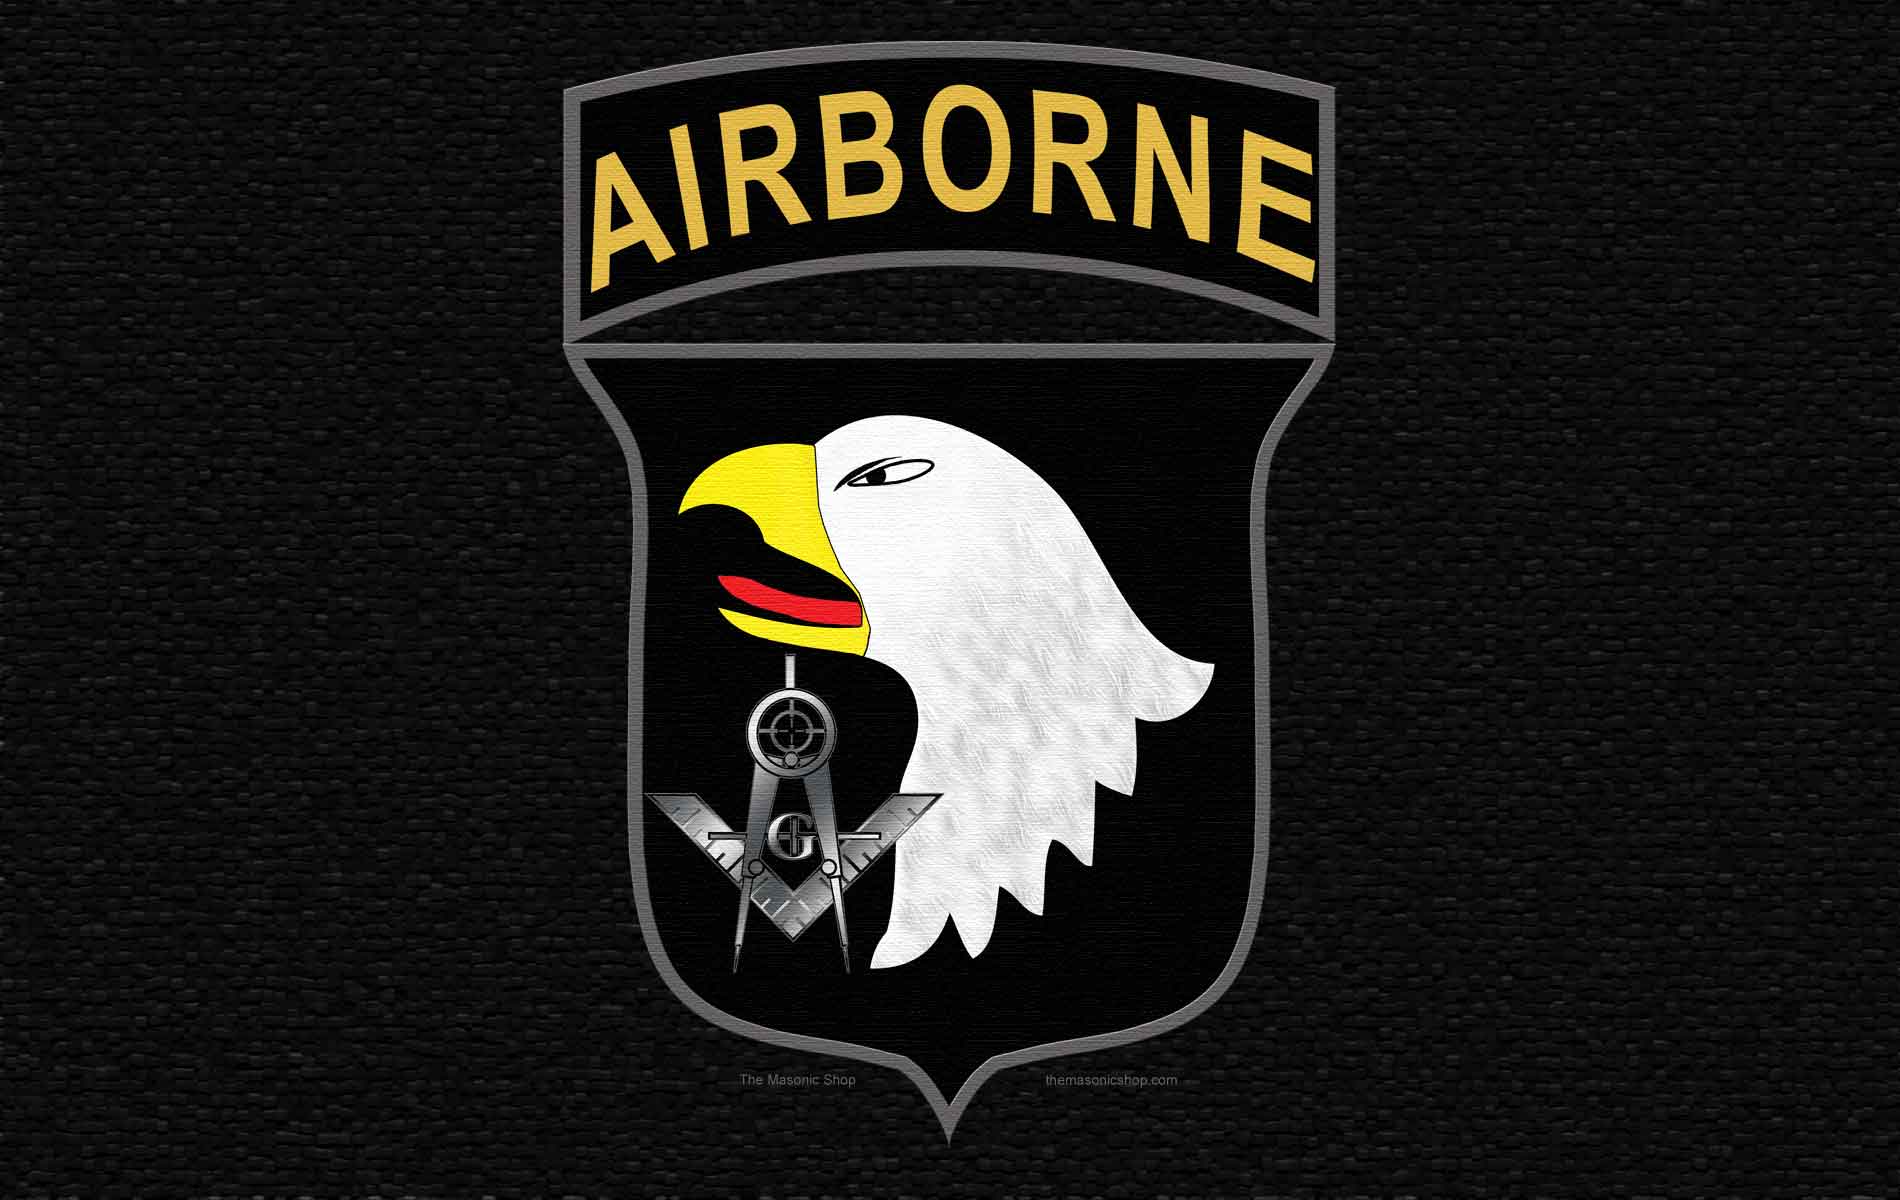 101st Airborne Wallpaper Galleryhip The